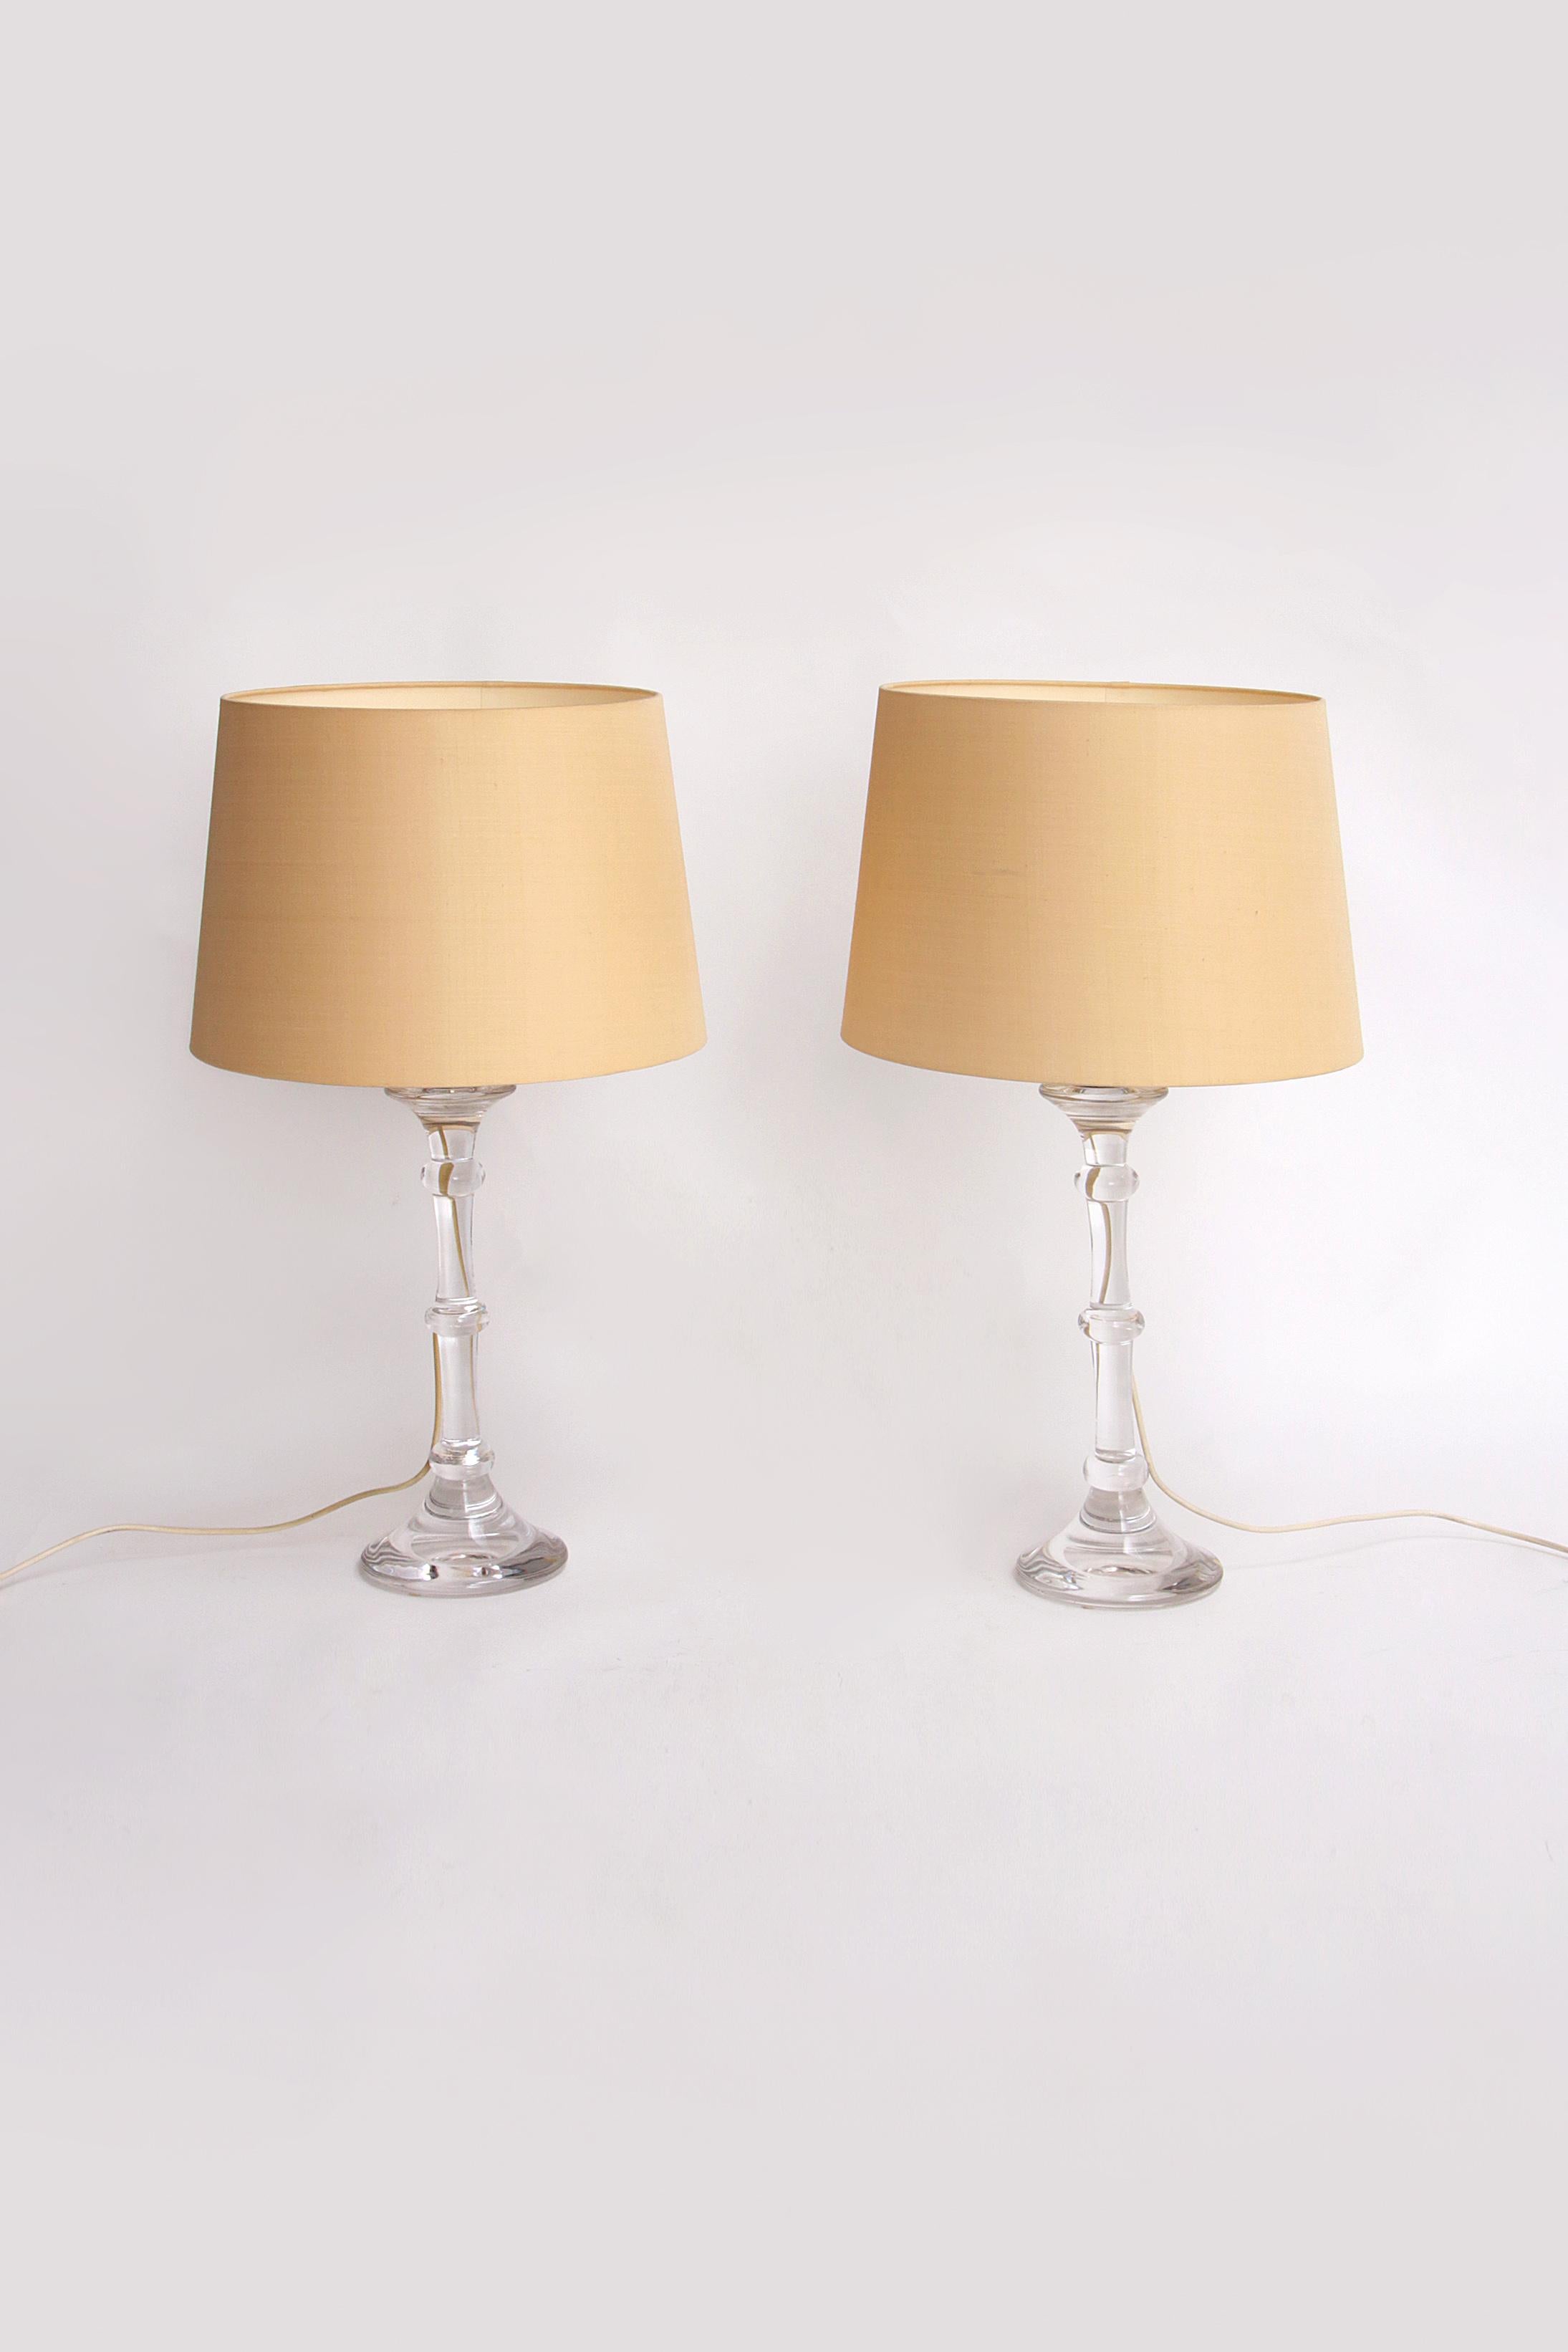 Mundgeblasene Designerlampe mit cremefarbenen Lampenschirmen von Ingo Maurer, 1960


Entdecken Sie die Exklusivität und Handwerkskunst von Ingo Maurer mit diesem wunderschönen Set mundgeblasener Designerlampen. Diese einzigartigen Lampen sind aus